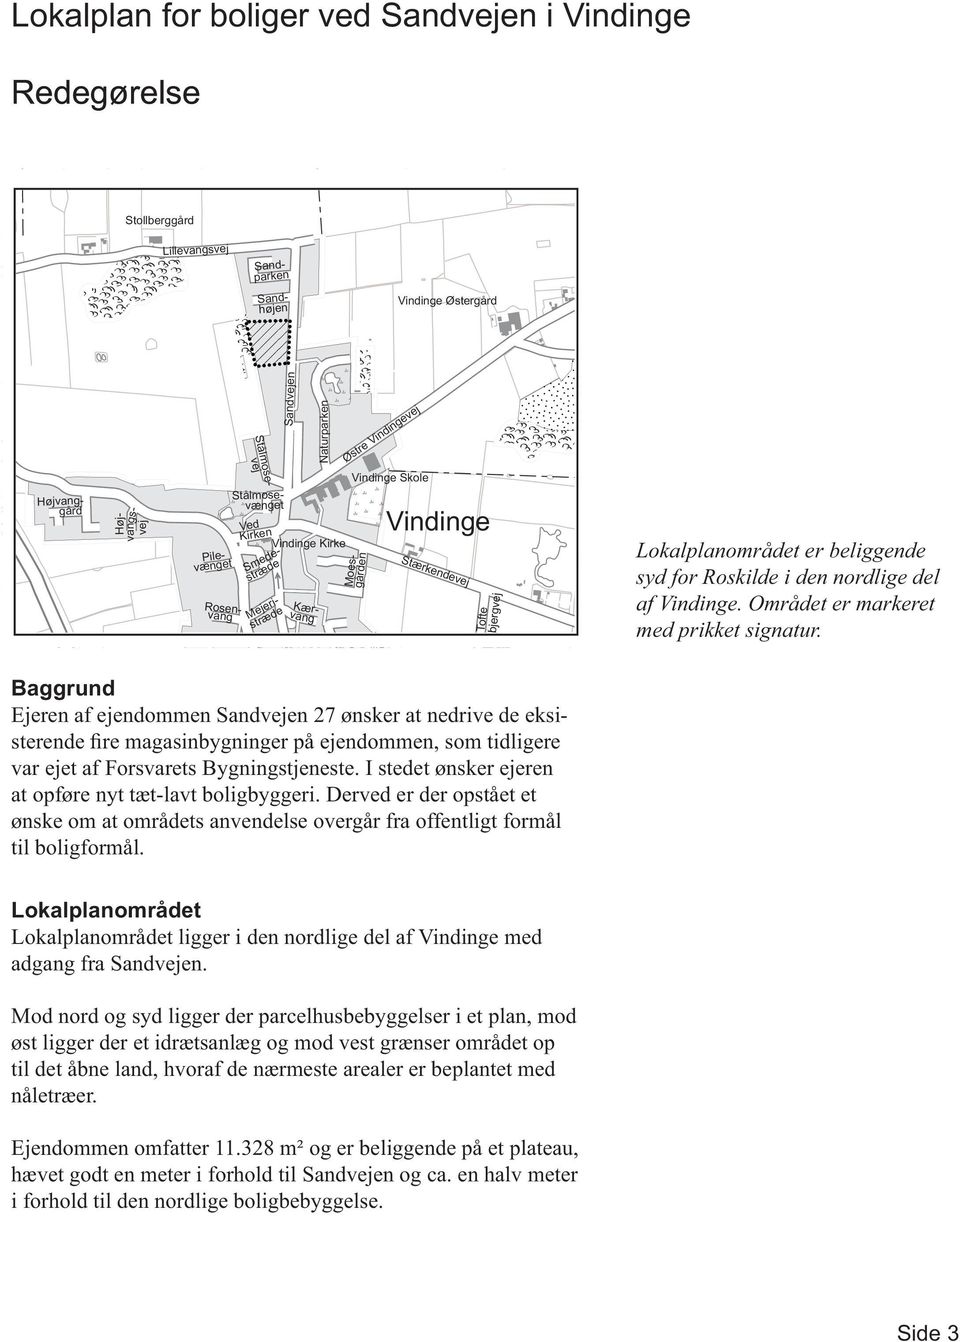 Lokalplanområdet er beliggende syd for Roskilde i den nordlige del af Vindinge. Området er markeret med prikket signatur.